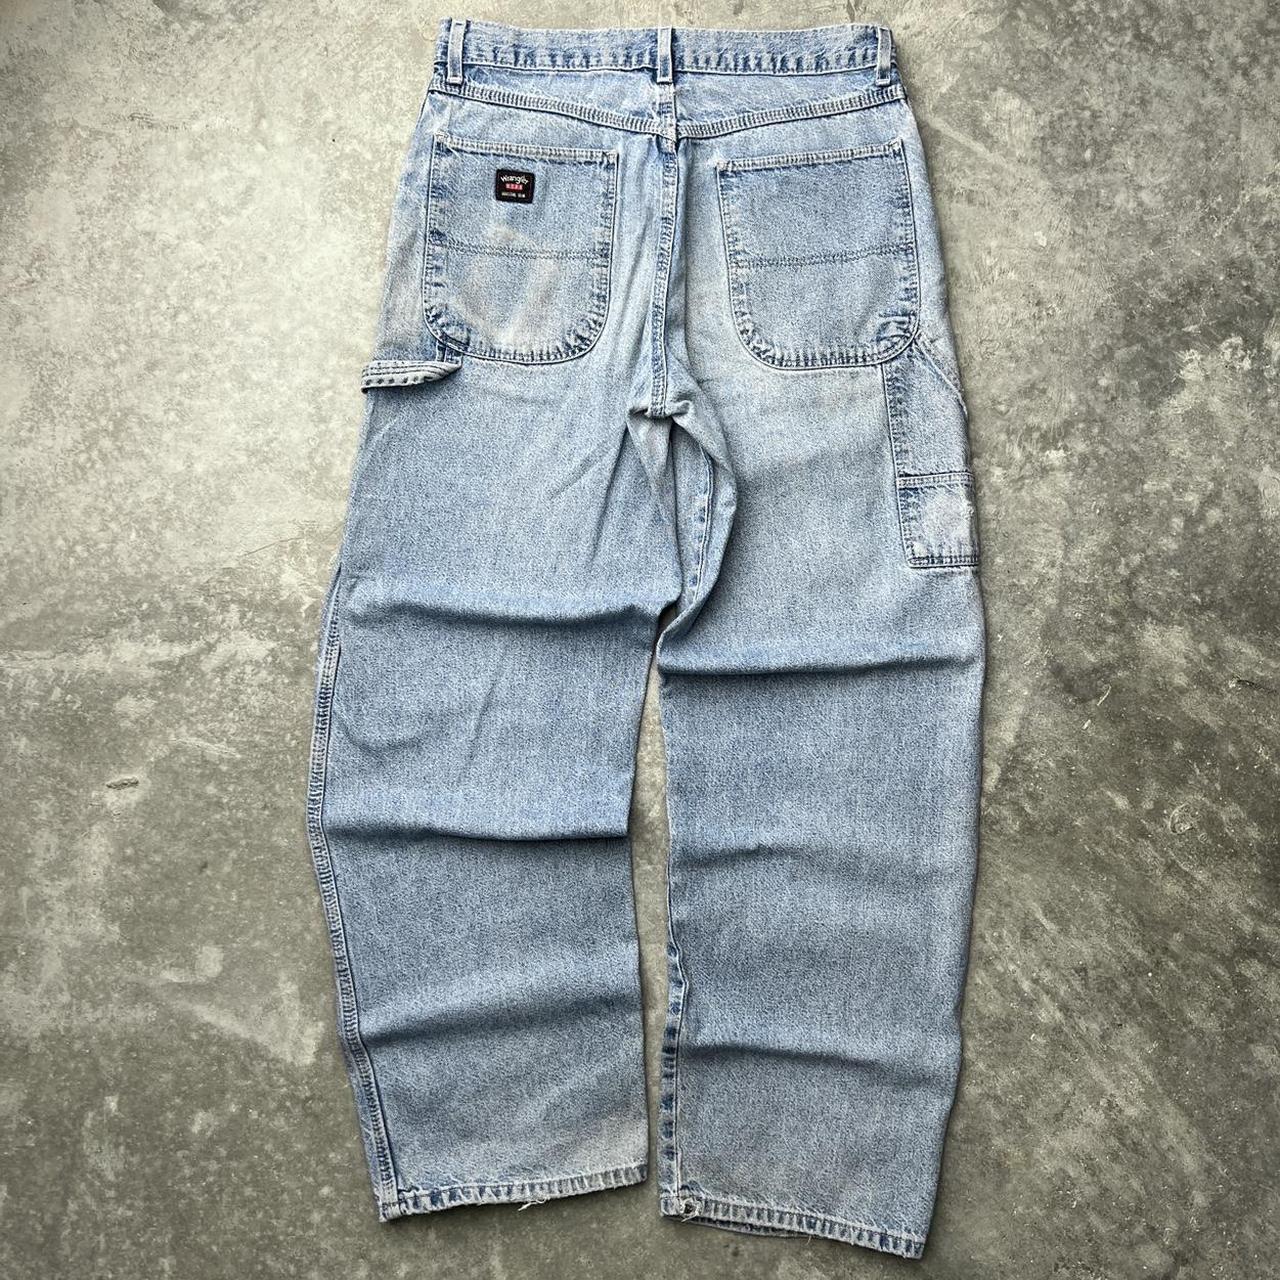 Vintage Wrangler Carpenter Jeans 30W x 32L Great... - Depop